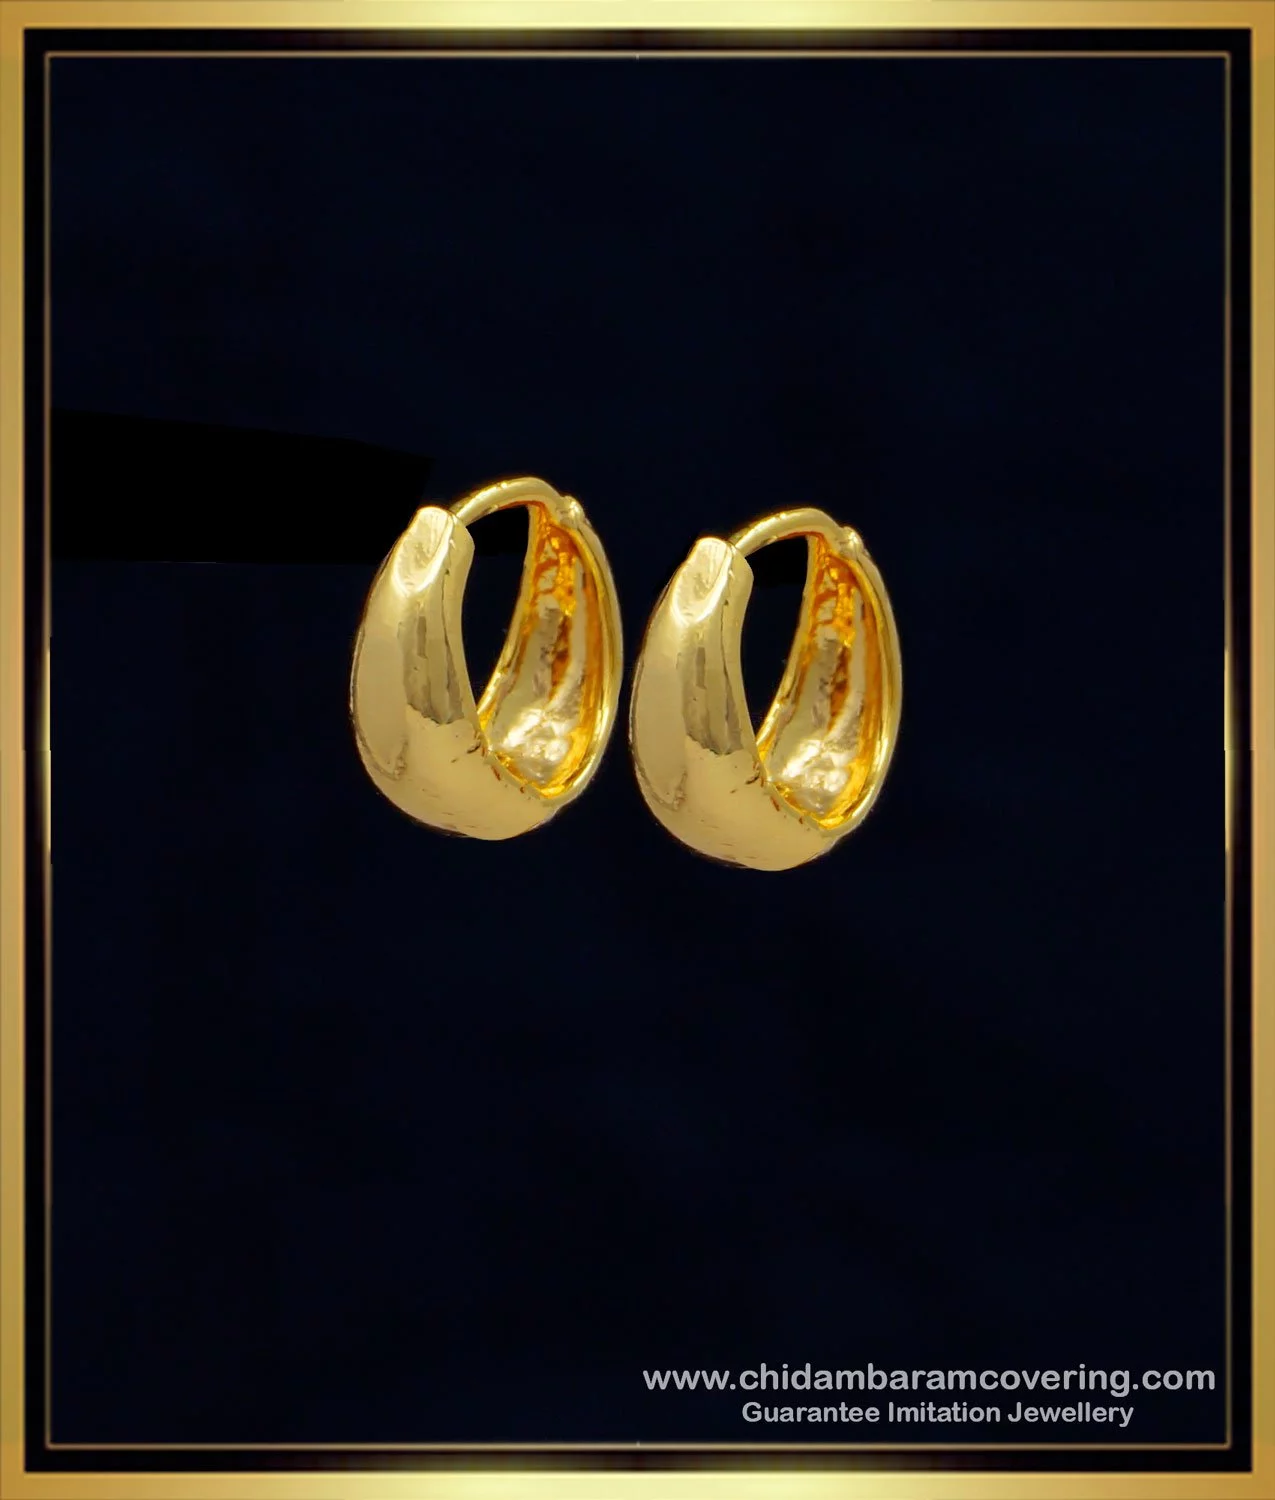 22K Gold Hoop Earrings (Ear Bali) For Baby - 235-GER15807 in 1.250 Grams-sgquangbinhtourist.com.vn